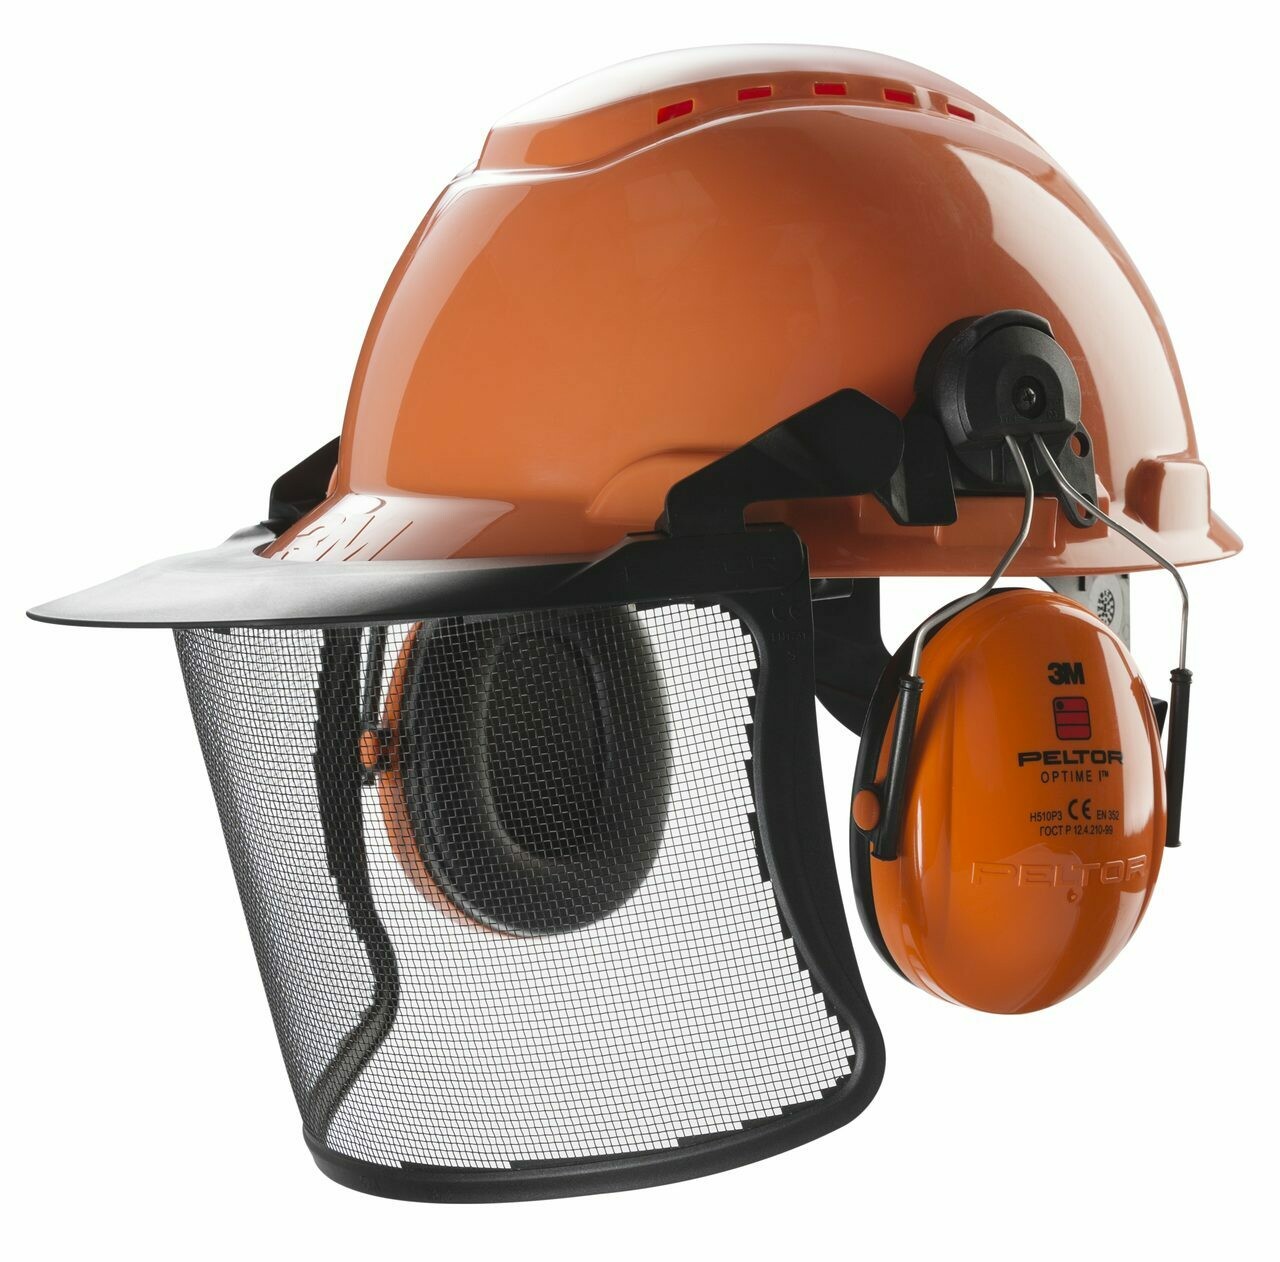 Forestry Helmet Combination